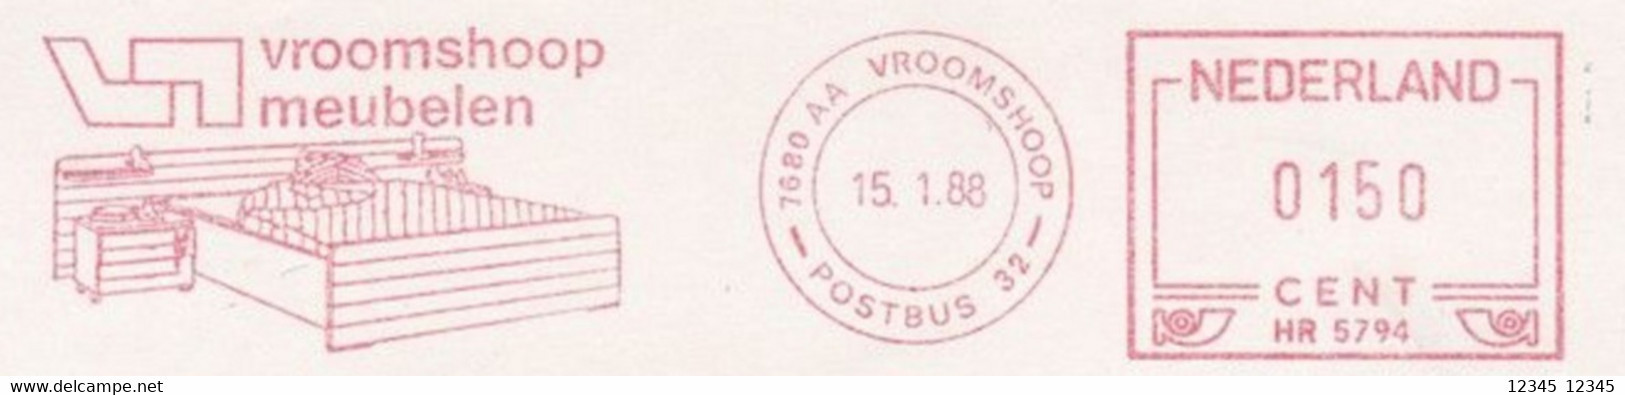 Nederland 1988, Vroomshoop Meubelen, Vroomshoop Furniture - Frankeermachines (EMA)